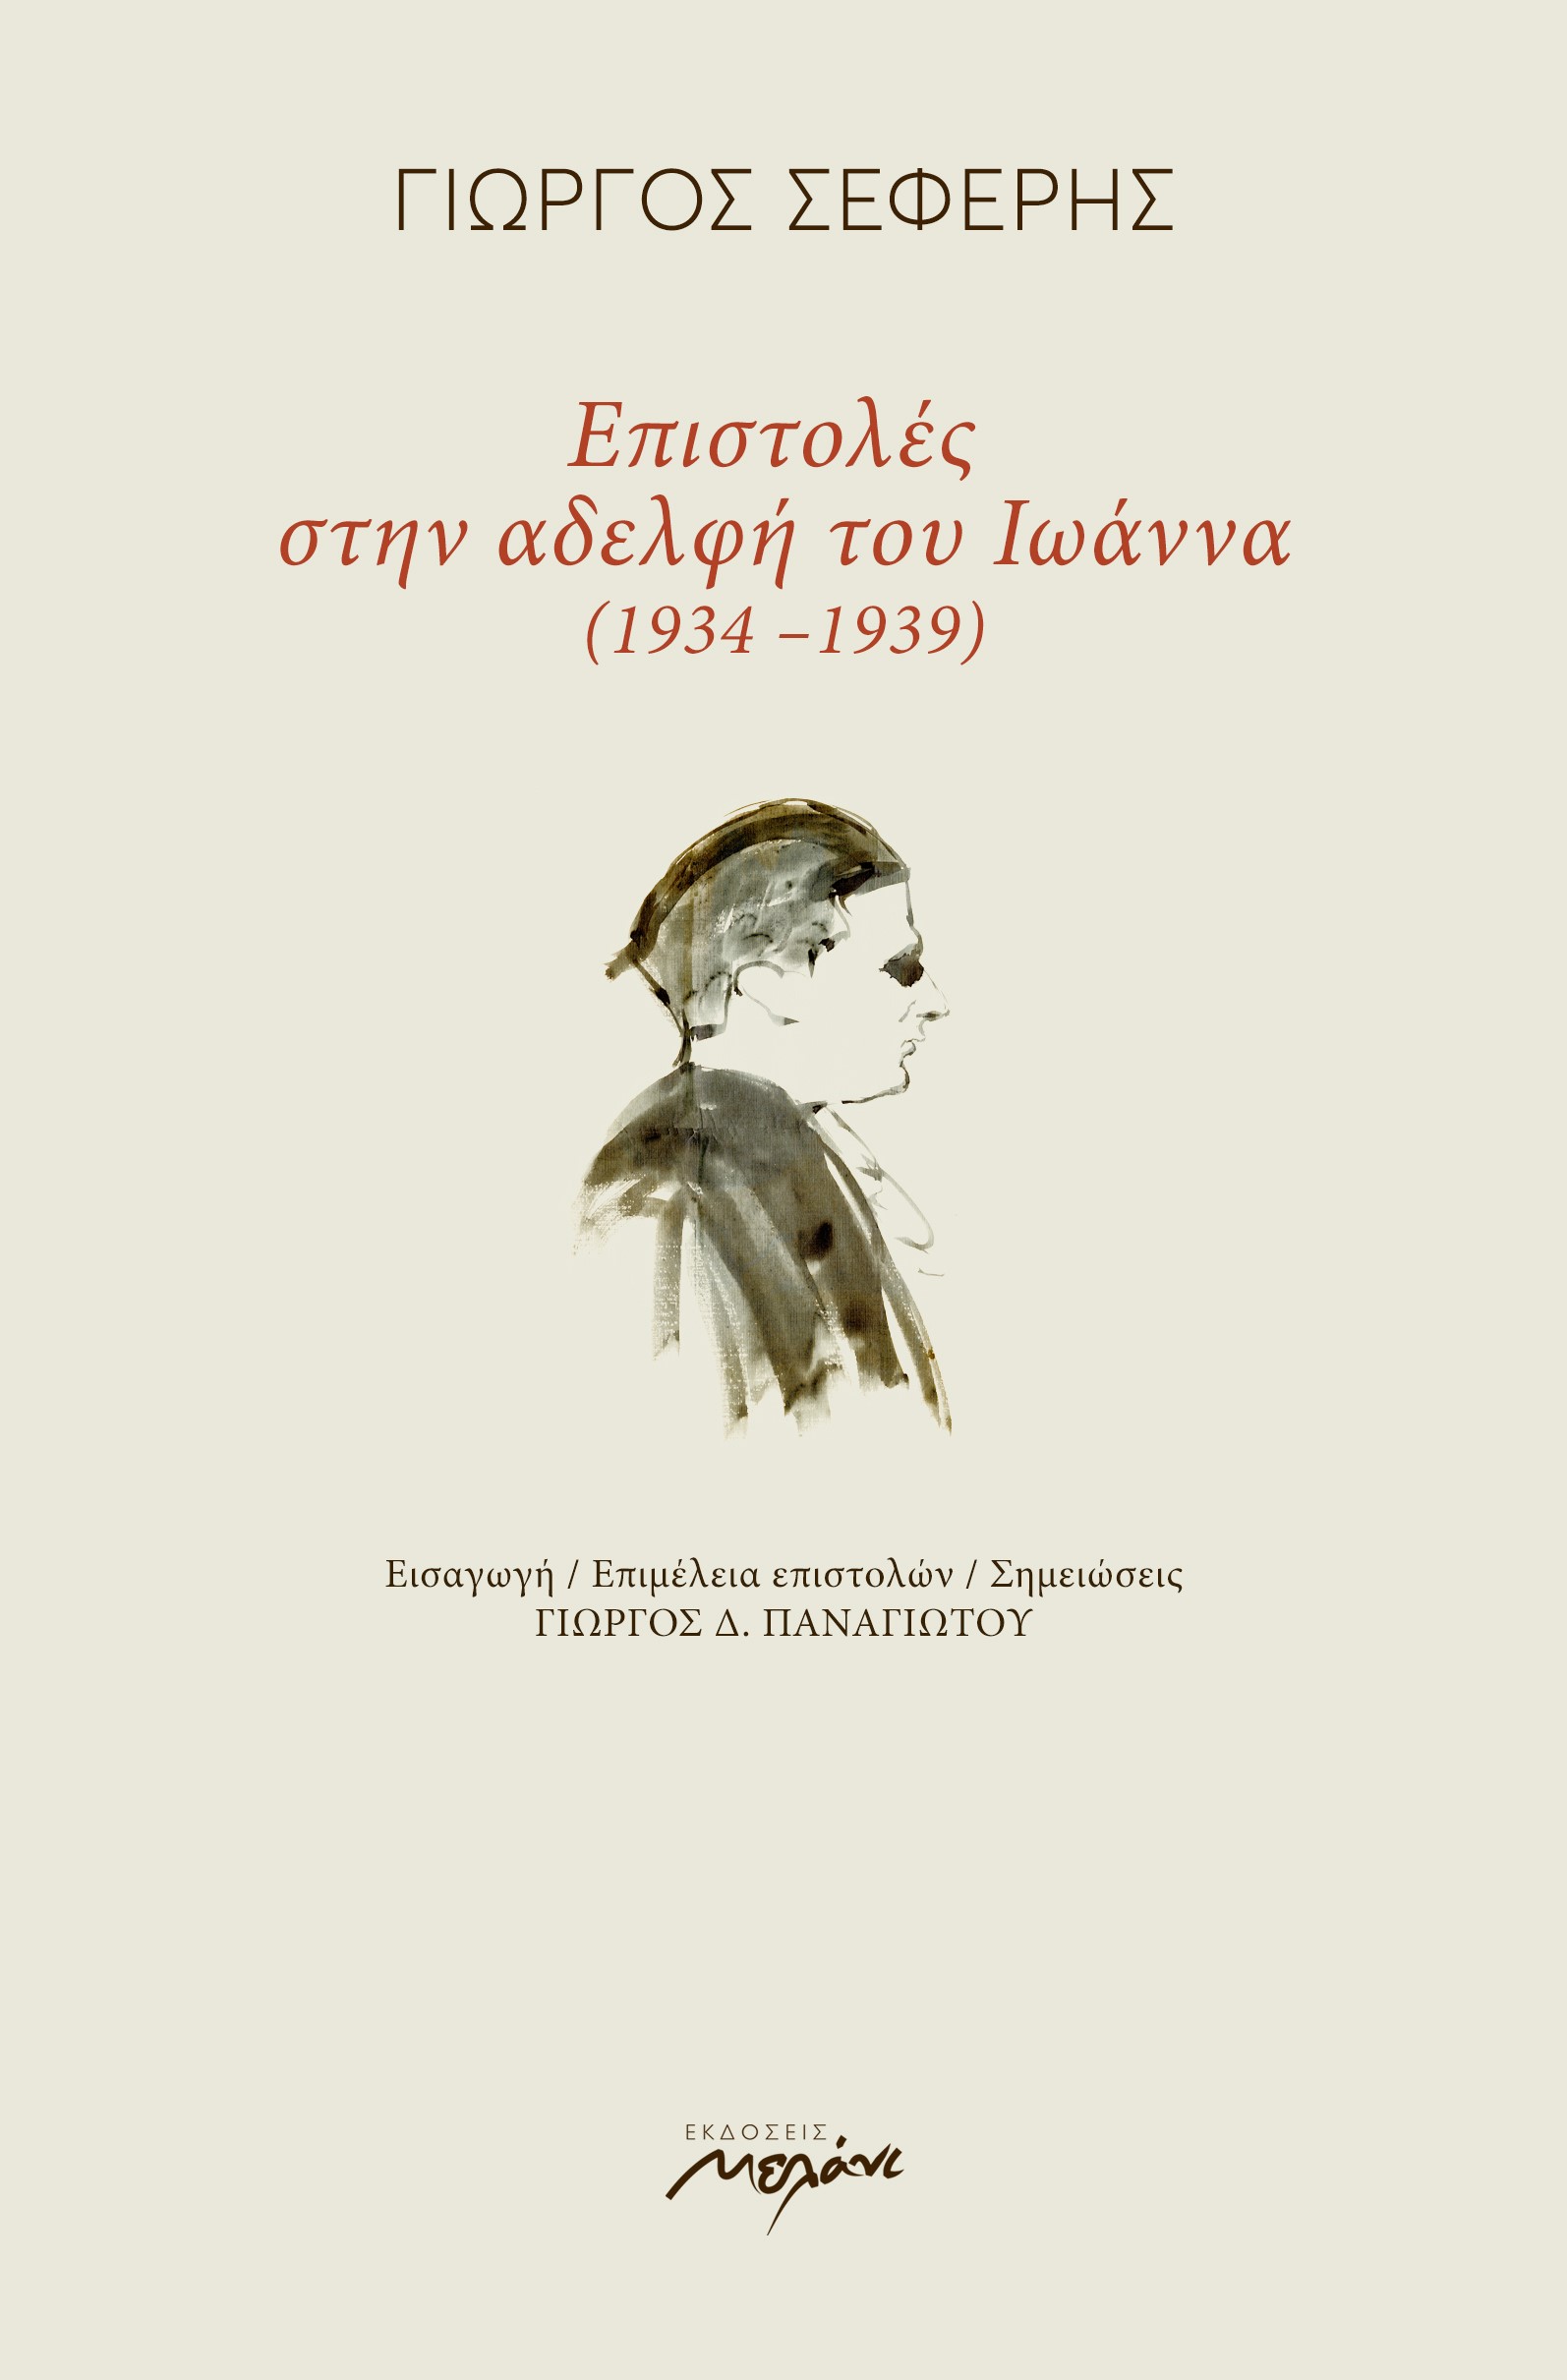 Επιστολές στην αδελφή του Ιωάννα (1934-1939), , Σεφέρης, Γιώργος, 1900-1971, Μελάνι, 2019